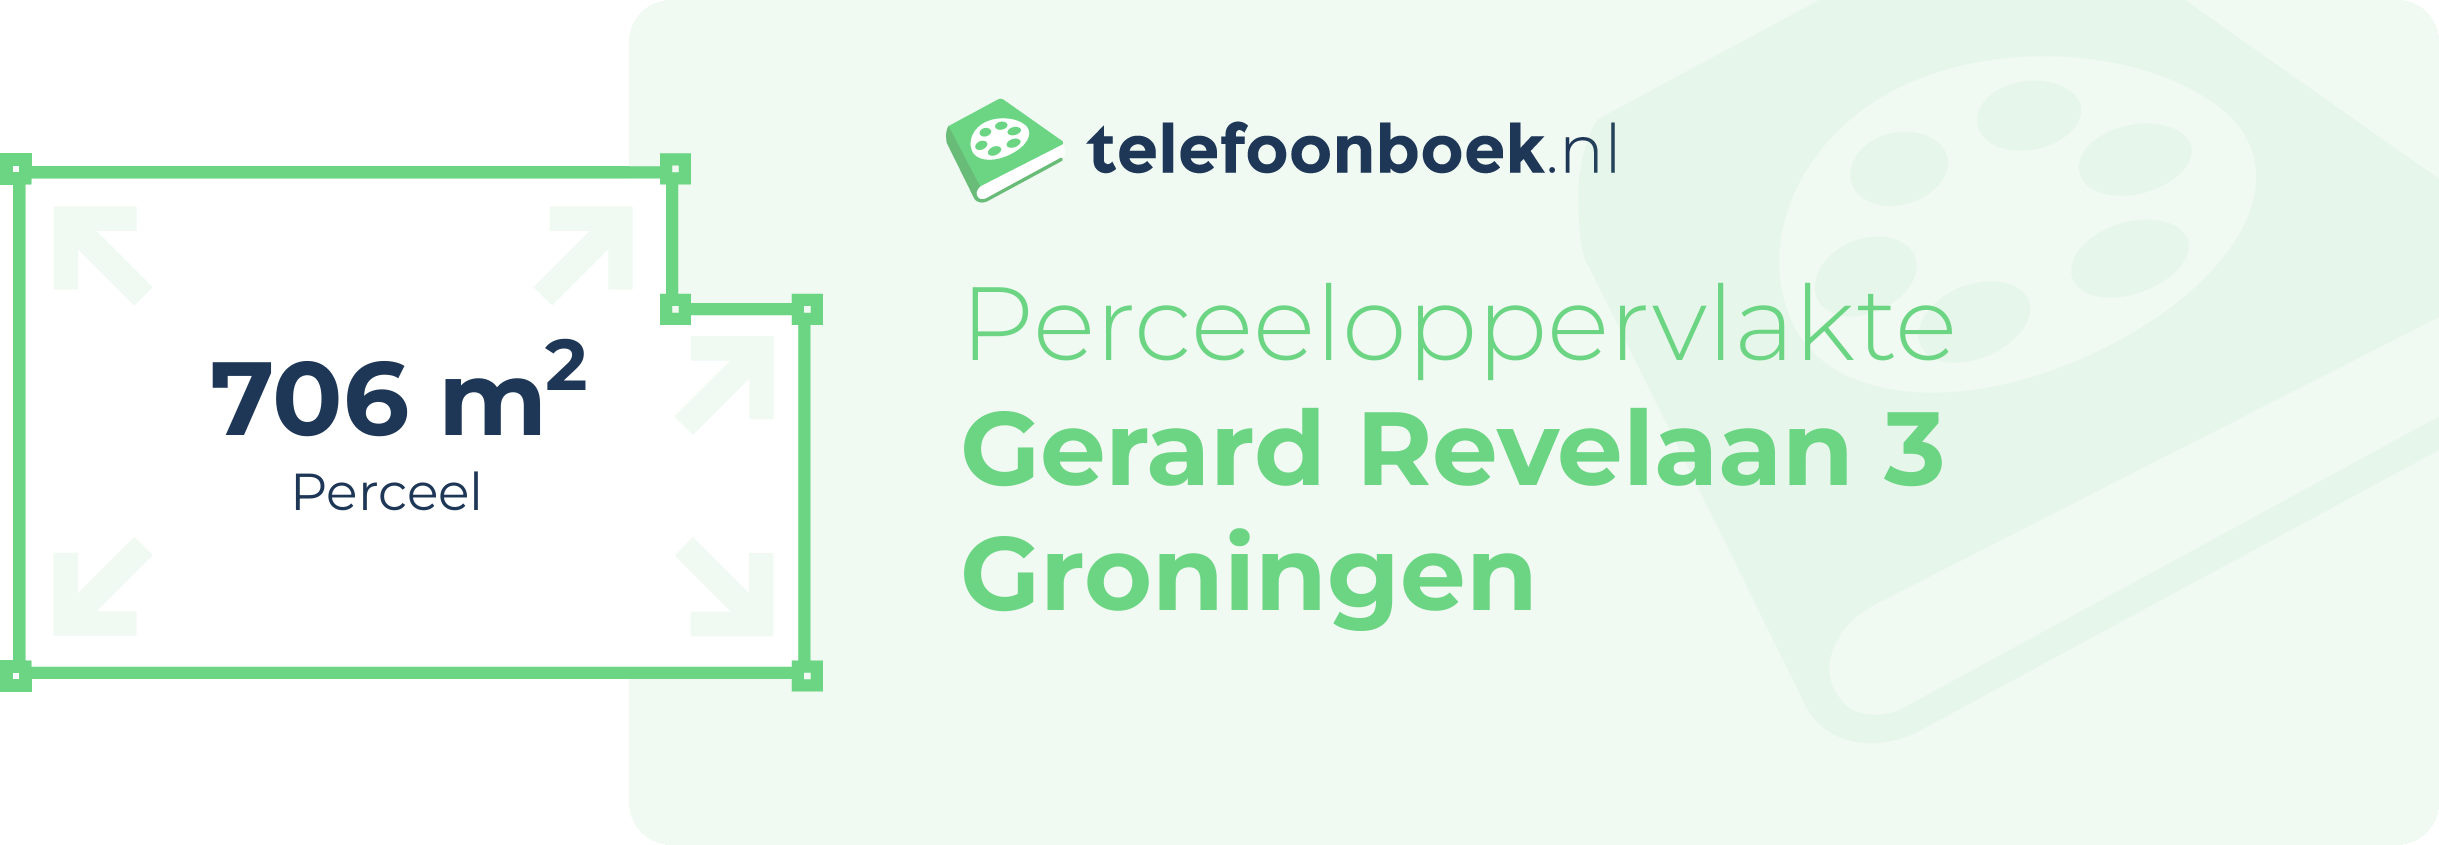 Perceeloppervlakte Gerard Revelaan 3 Groningen